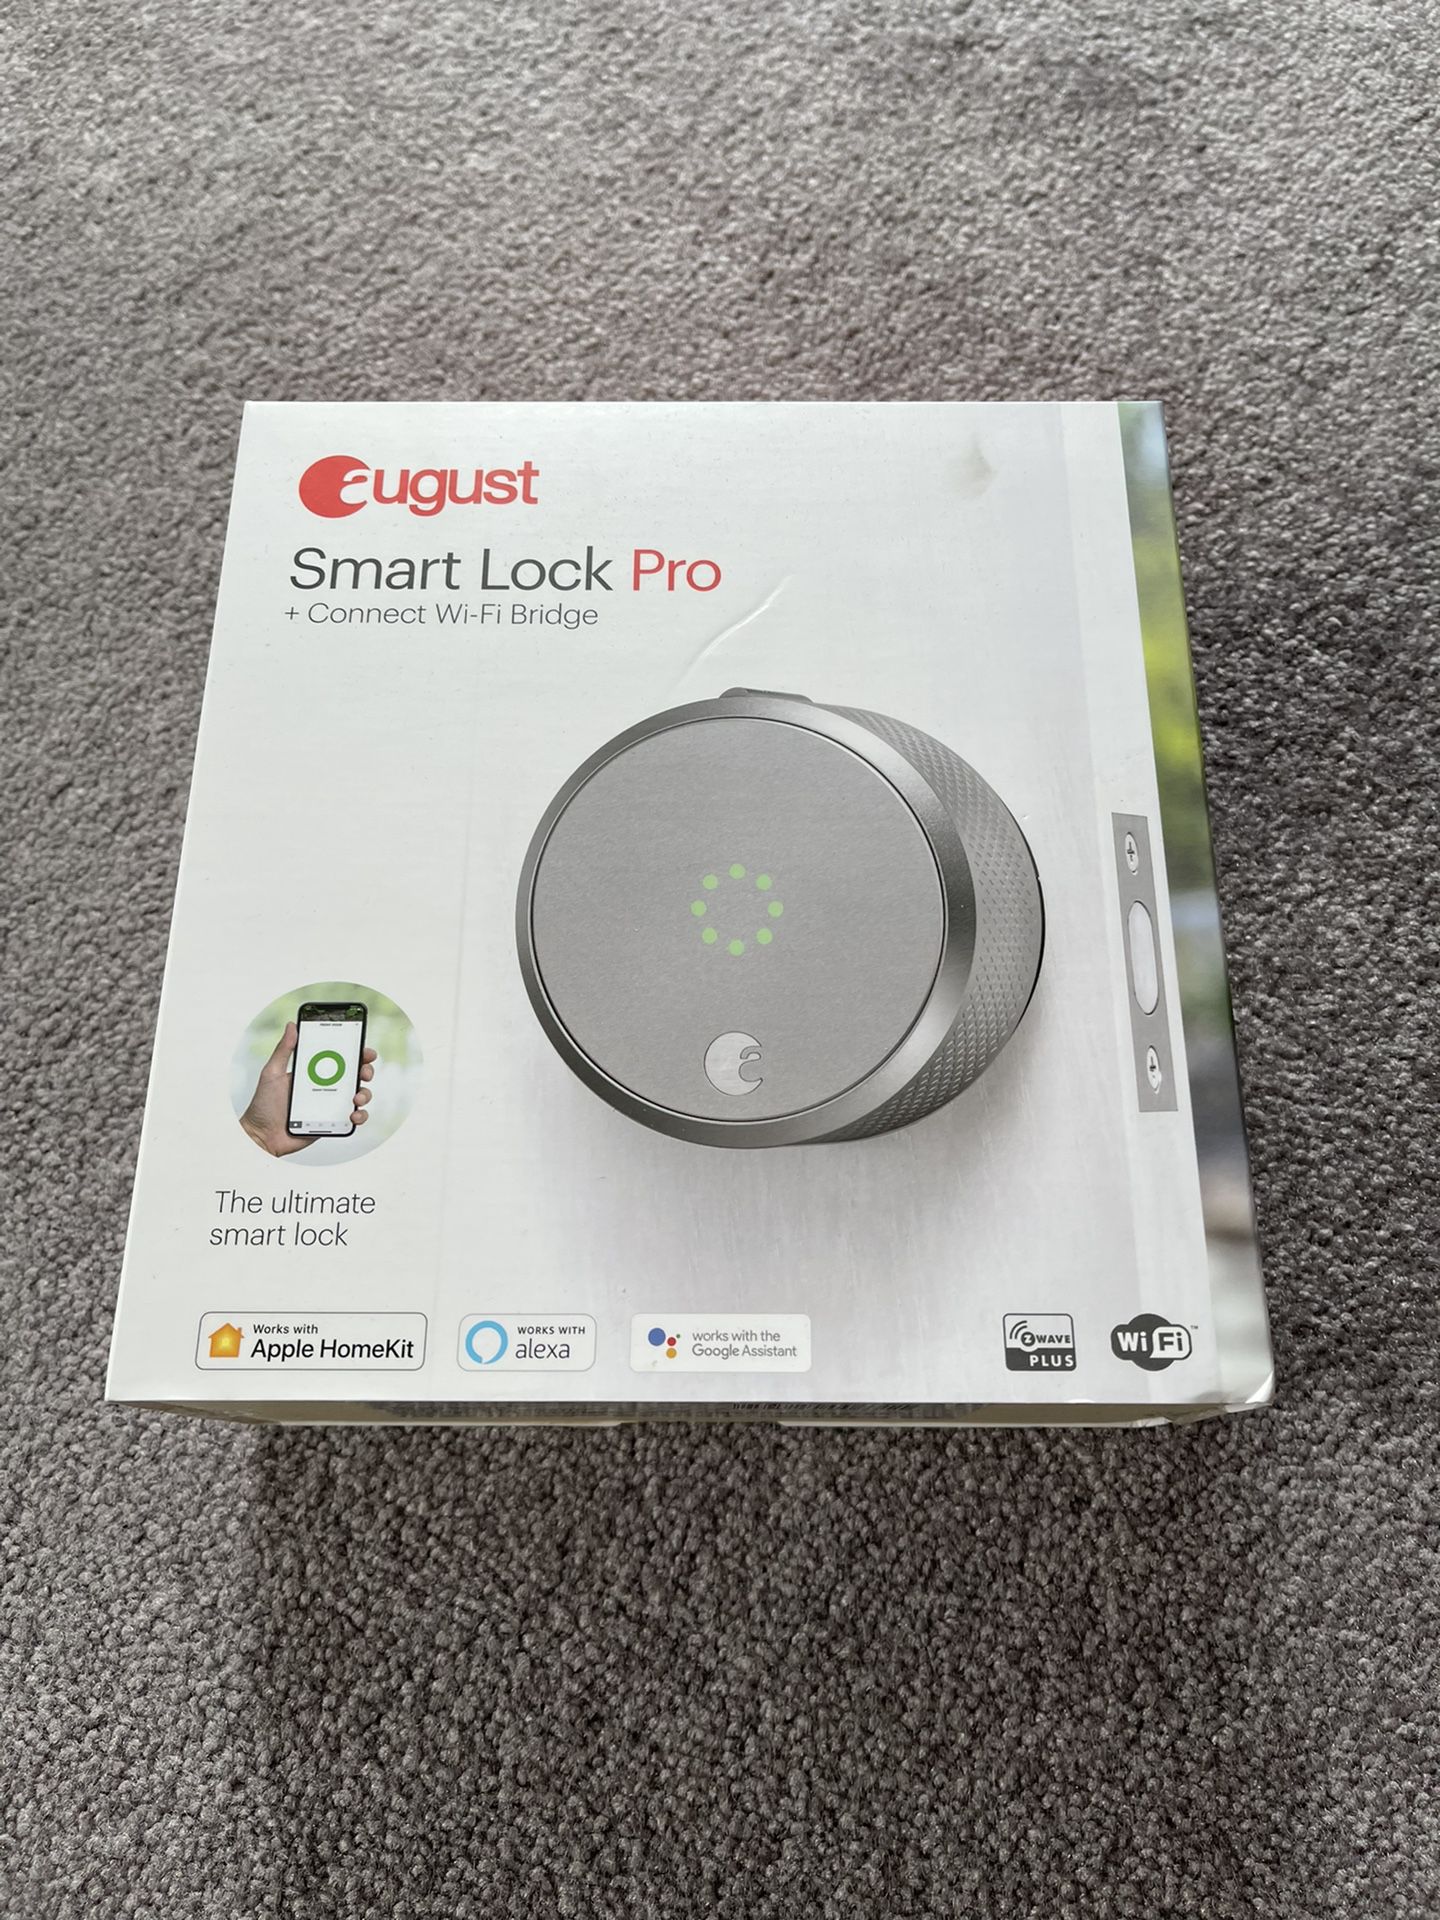 August Smart Lock Pro, WiFi / Keyless Entry!